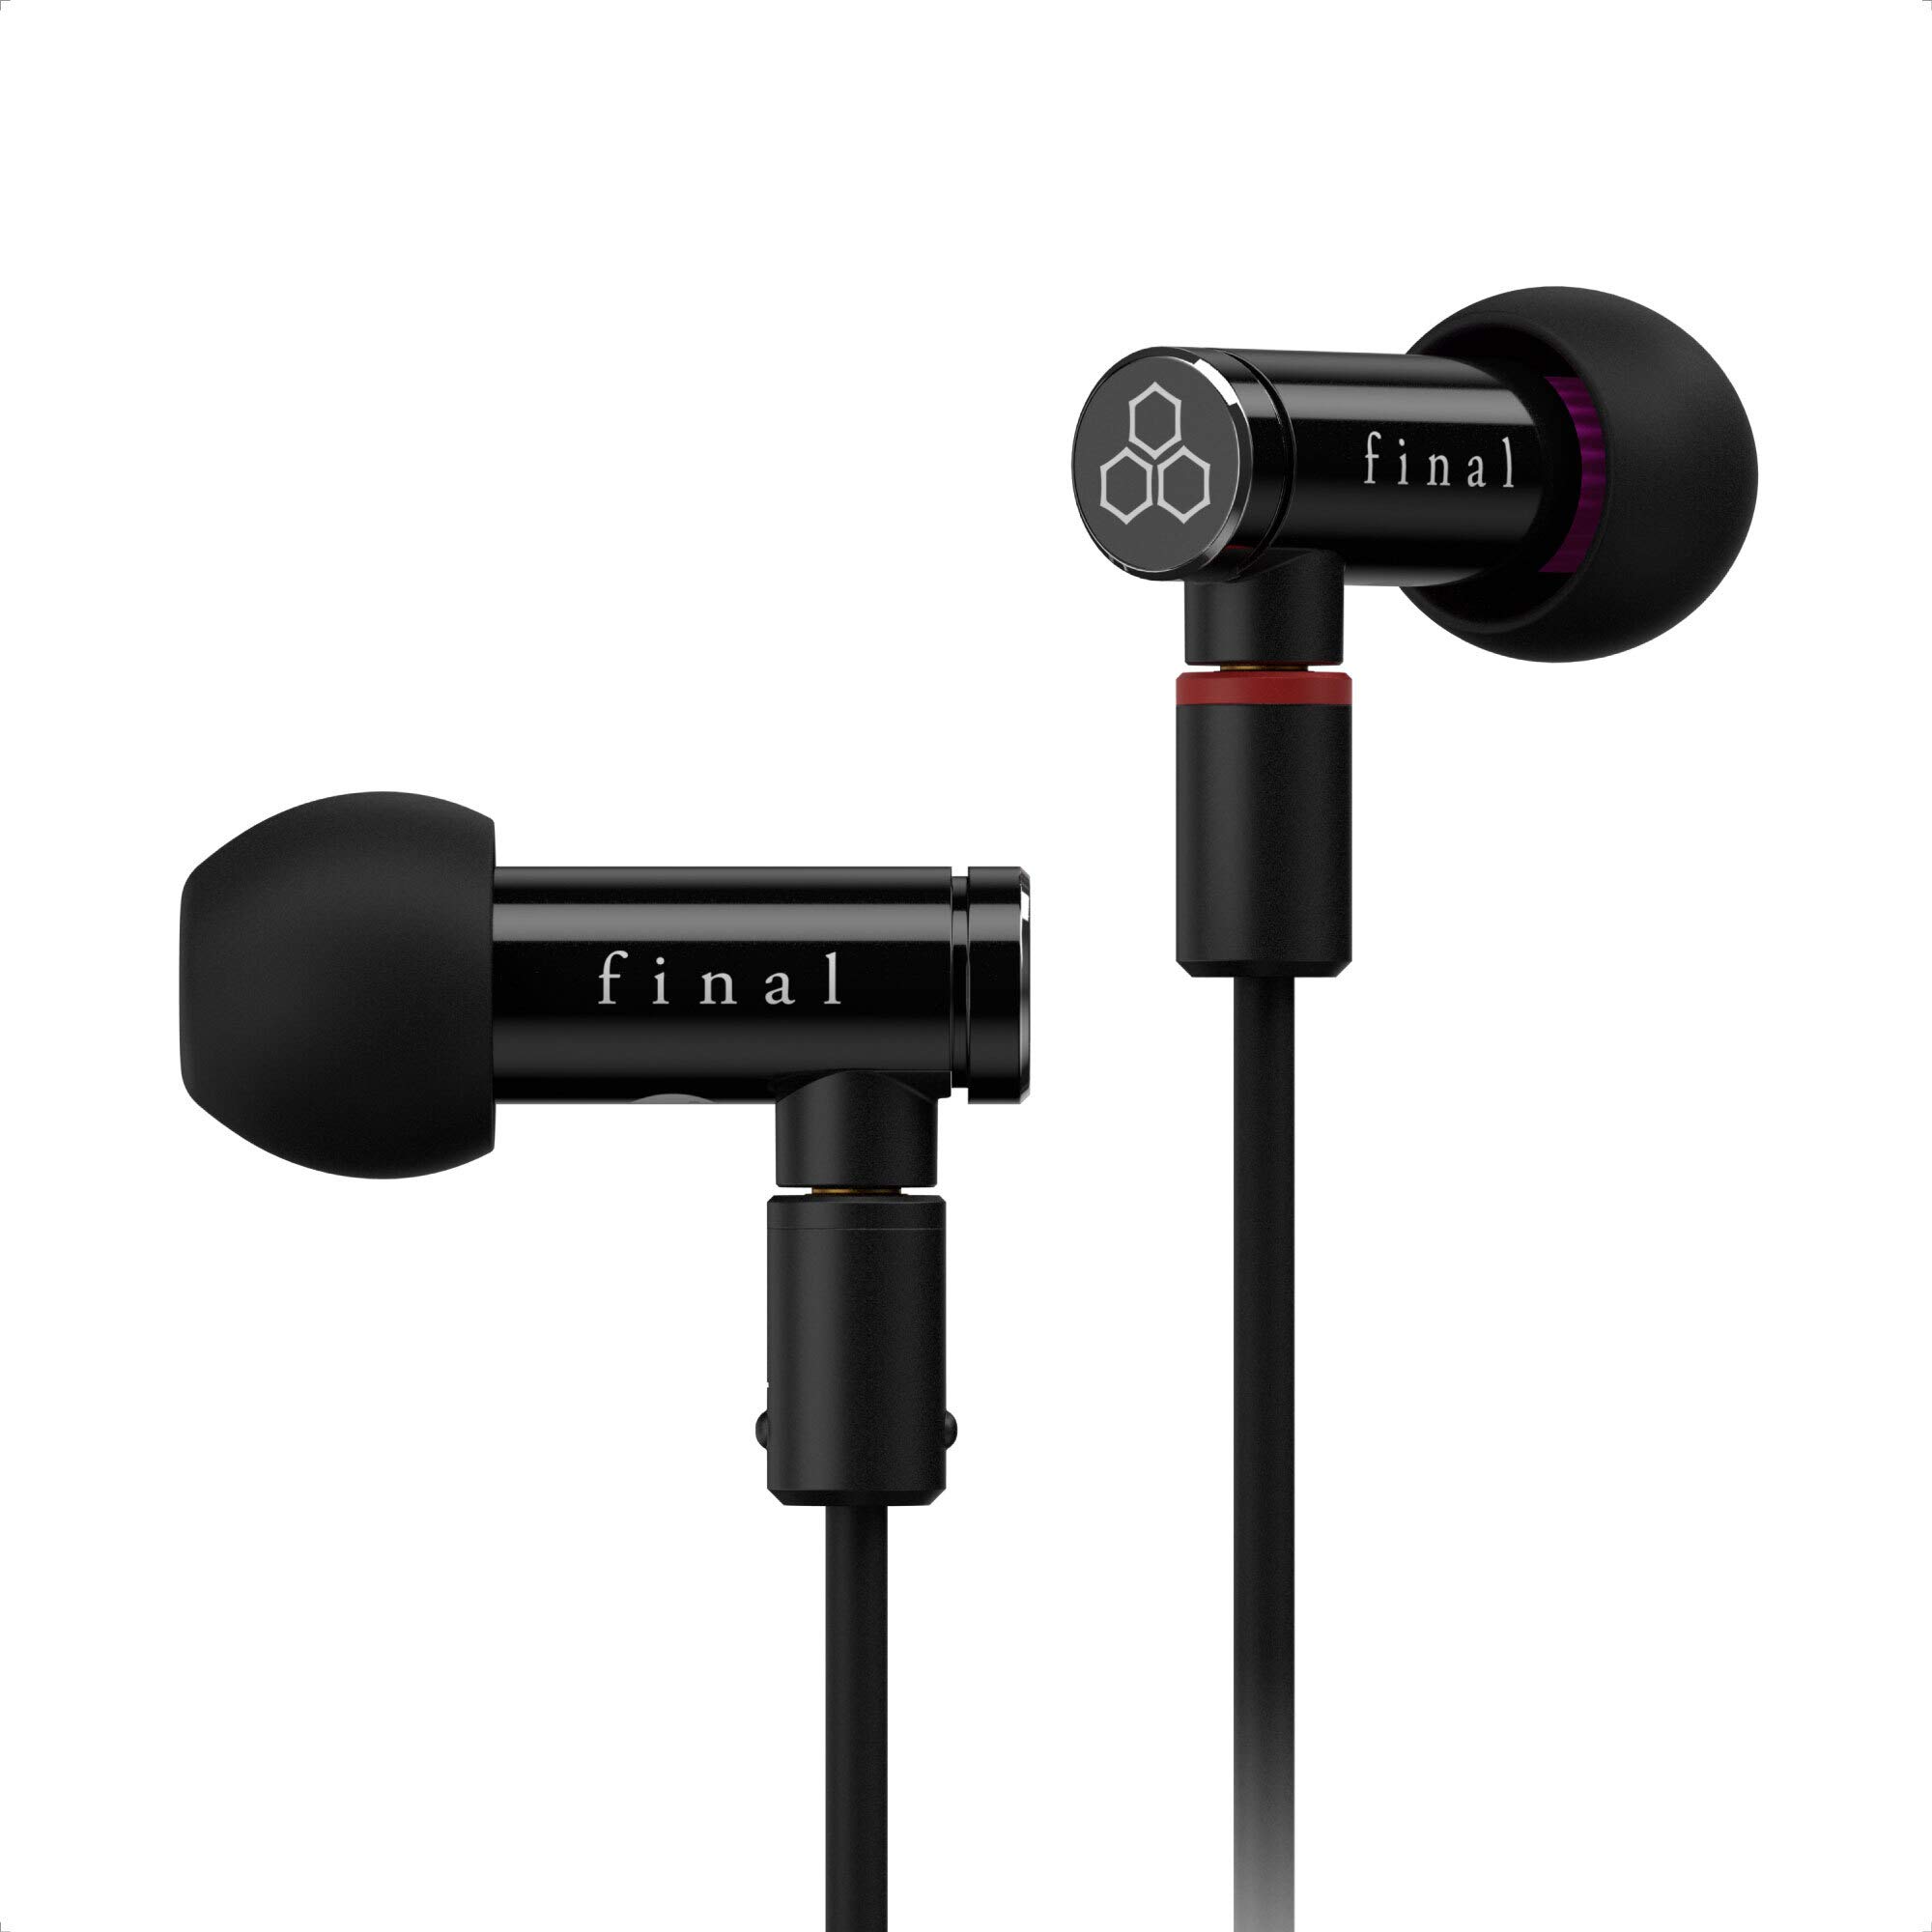 Final Audio Design Fones de ouvido intra-auriculares com isolamento de som de alta resolução Final E4000